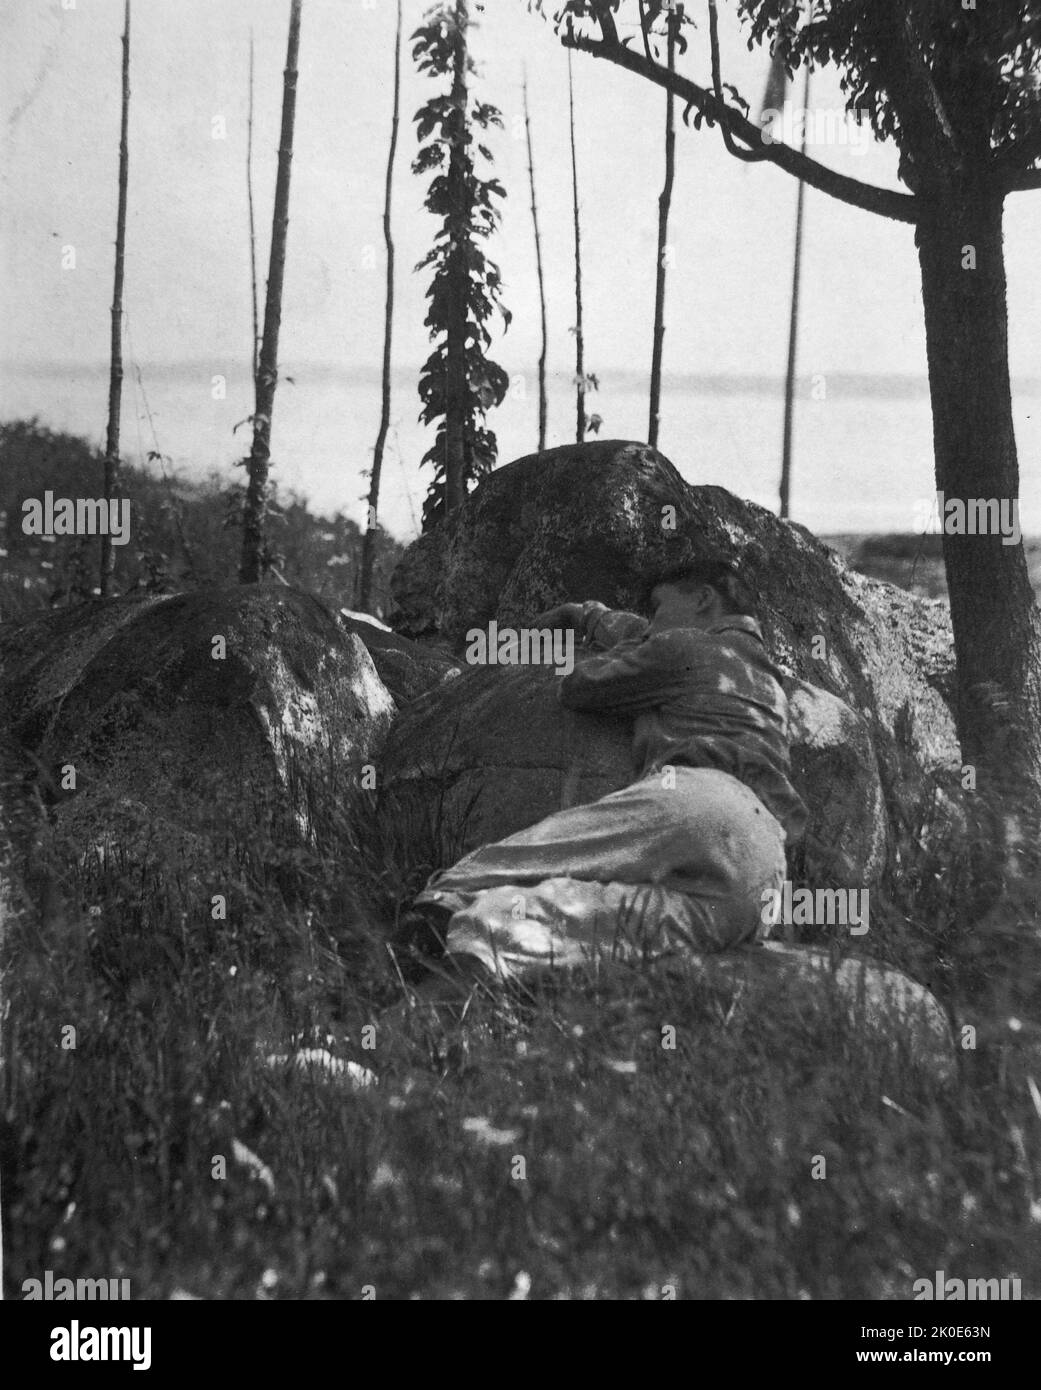 Garçon dormant sur un rocher, par Fred Holland Day (1864--1933), photographe et éditeur américain. Il a été éminent dans les cercles littéraires et photographiques à la fin du 19th siècle et a été un grand Pictorialiste. Il a été un défenseur précoce et vocal de l'acceptation de la photographie comme un bel art Banque D'Images